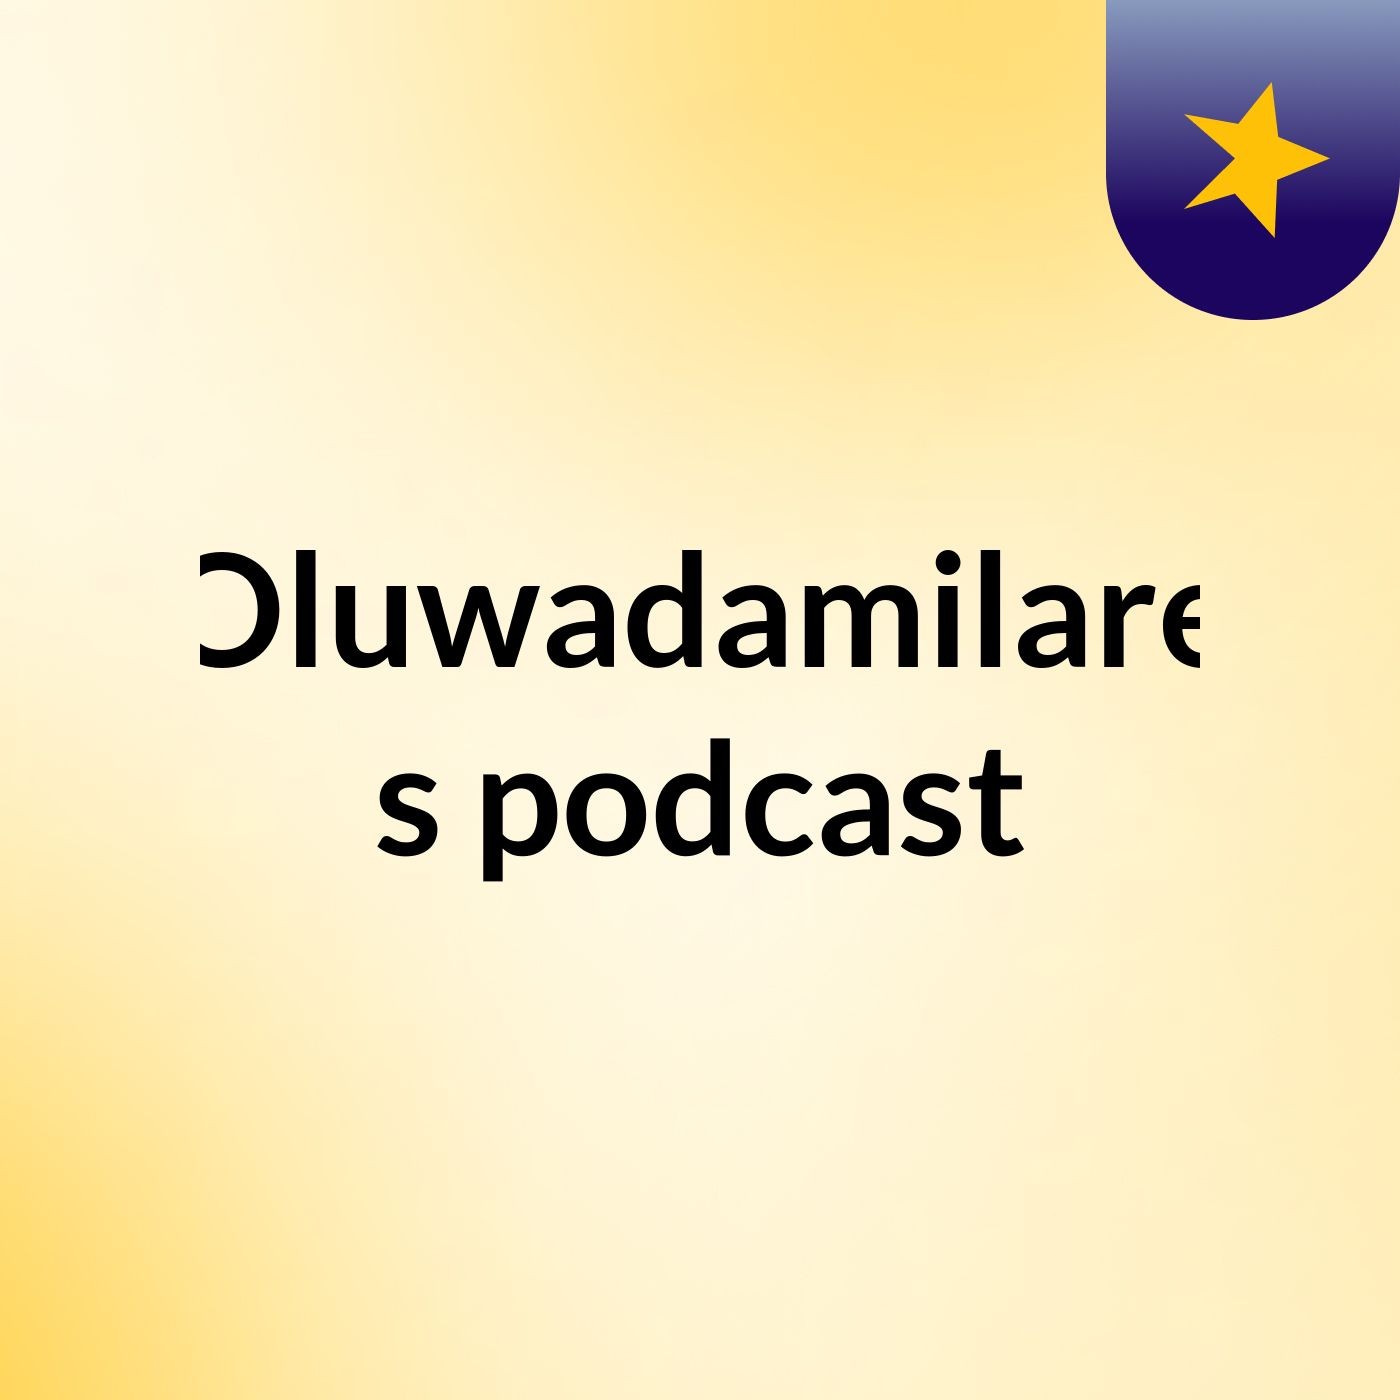 Episode 3 - Oluwadamilare's podcast